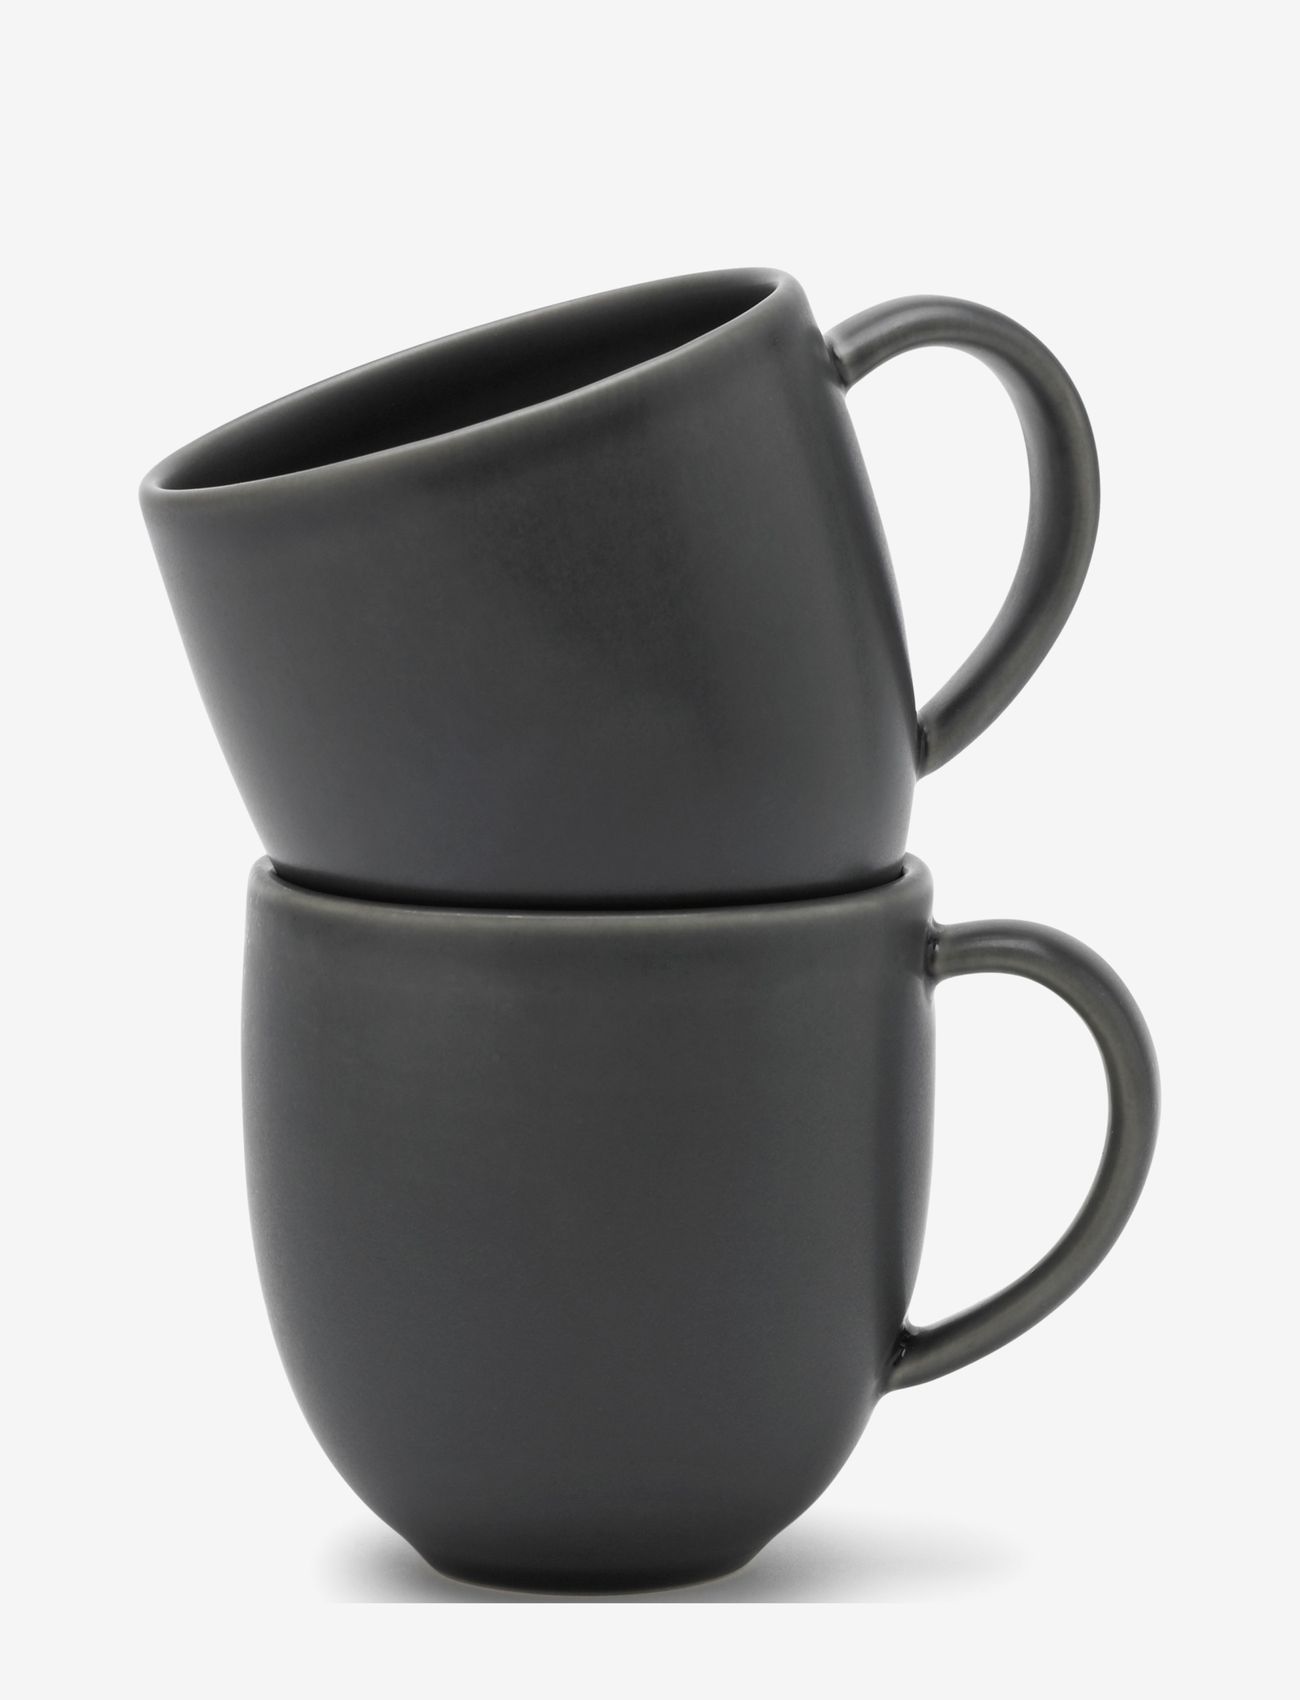 Knabstrup Keramik - Tavola mug 2 pcs. - lowest prices - grey - 1